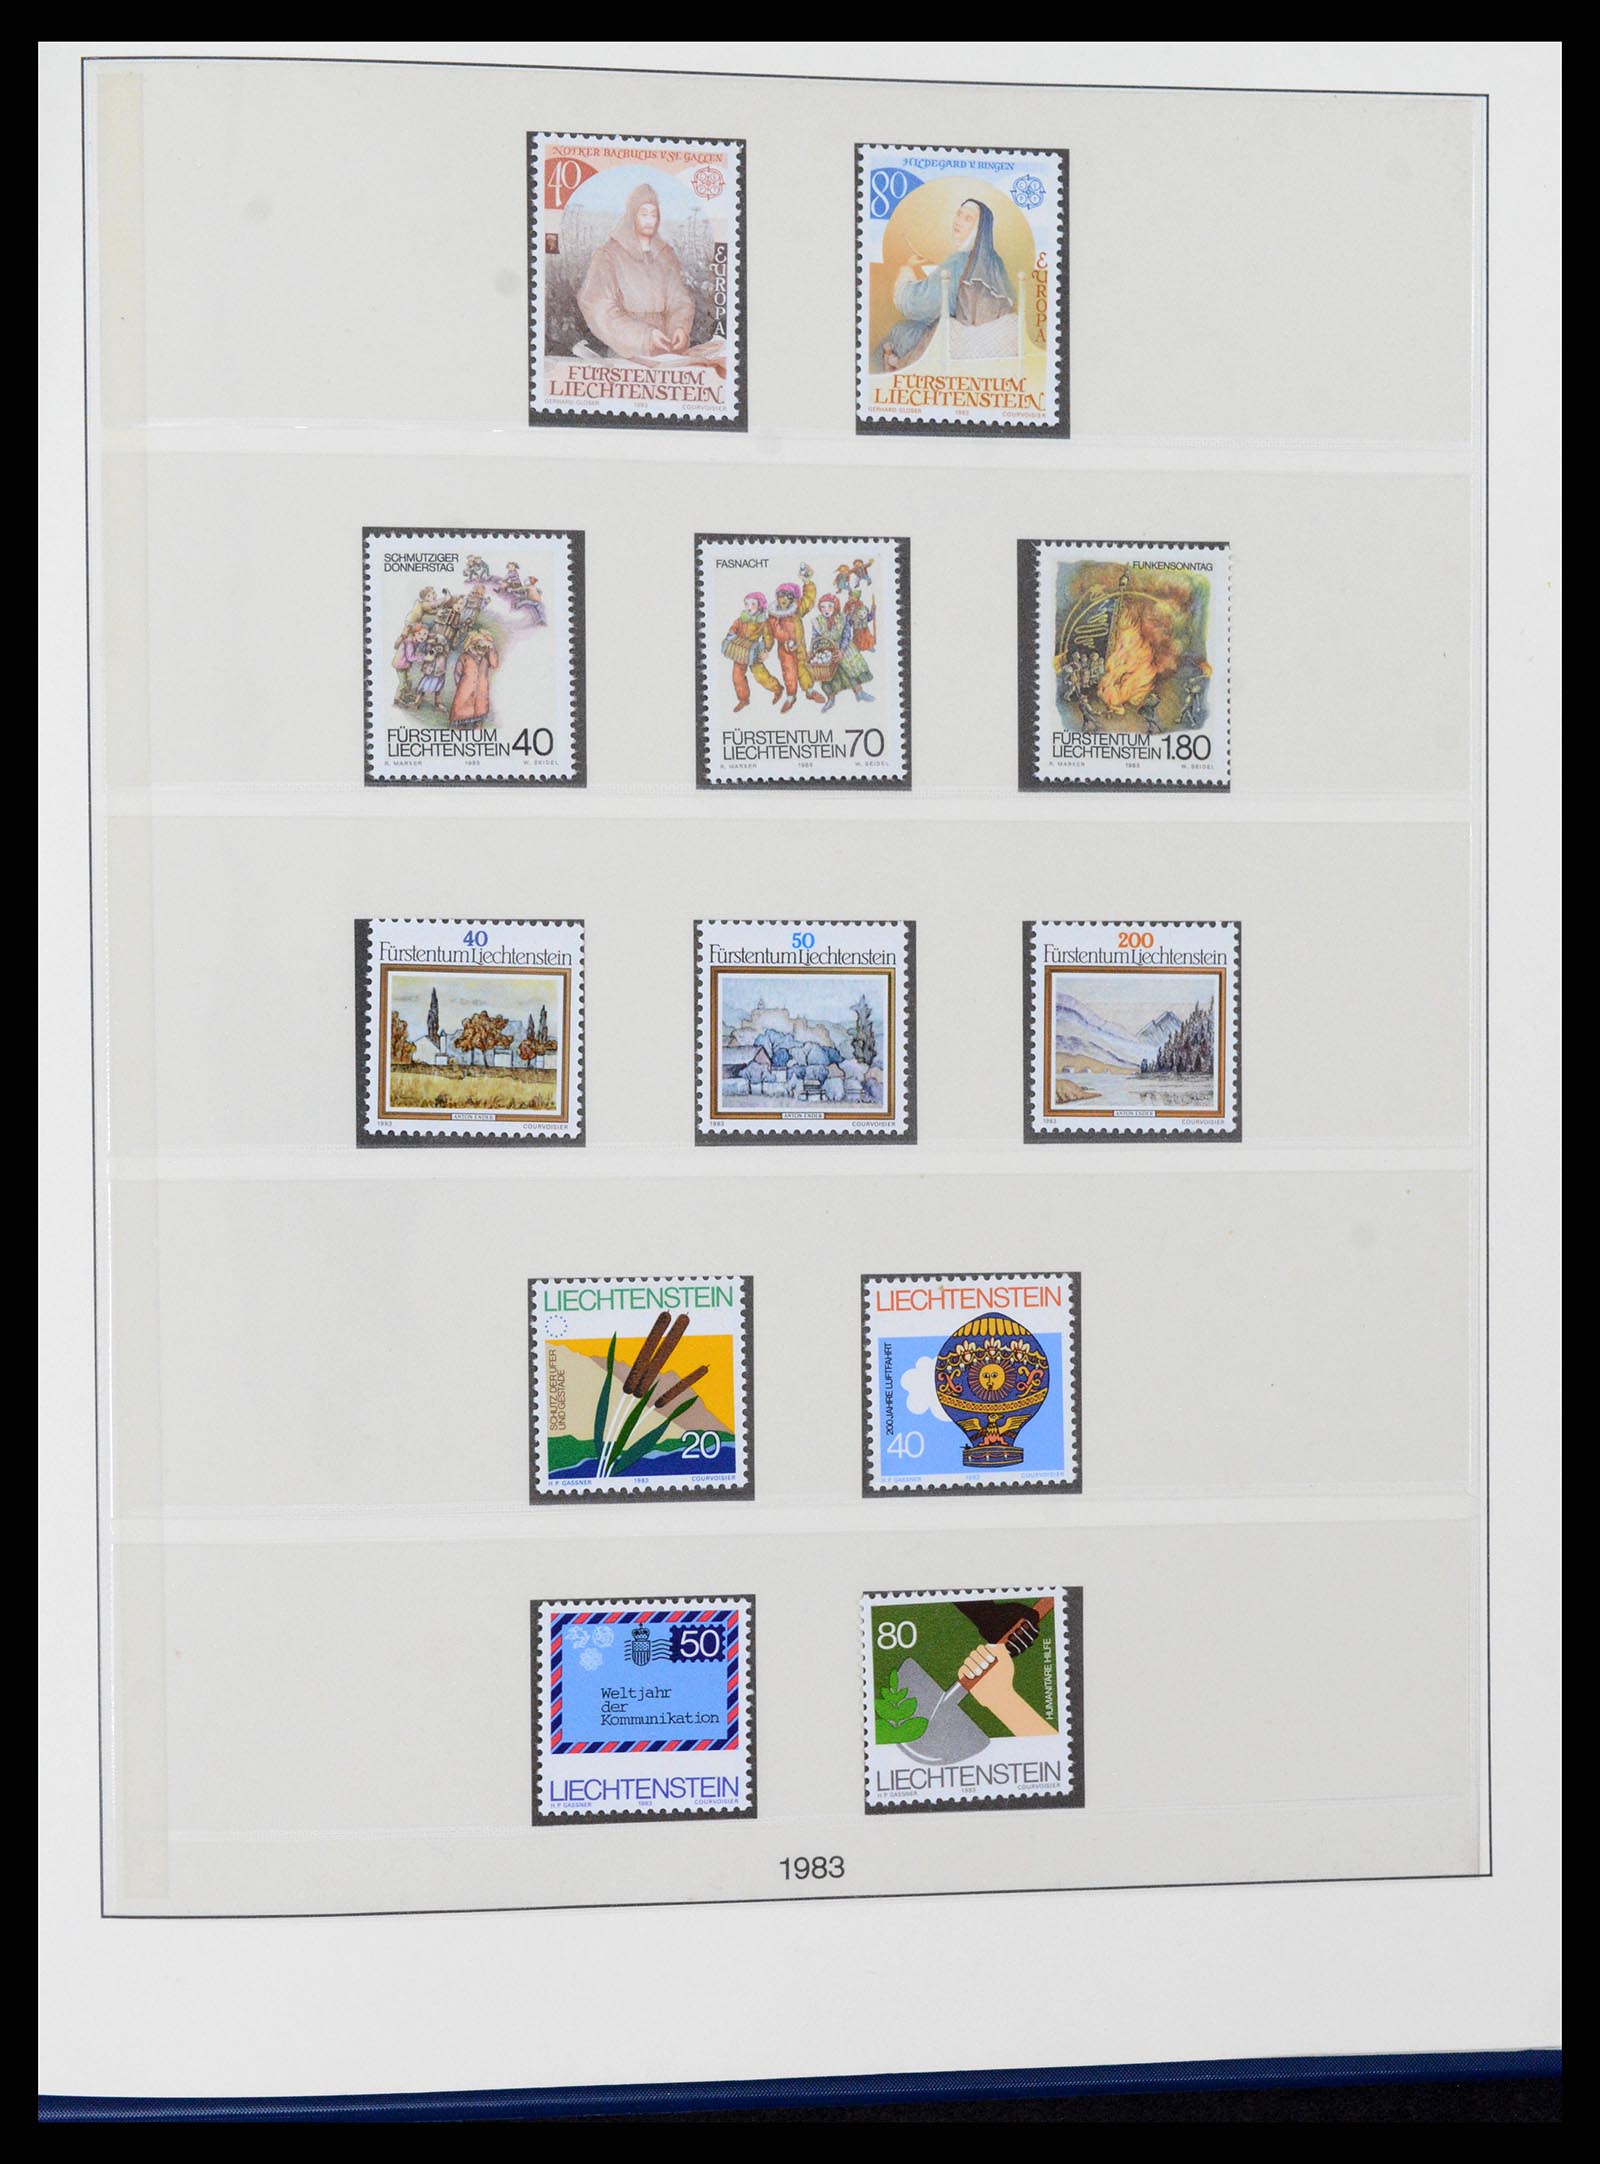 37295 081 - Stamp collection 37295 Liechtenstein 1912-2009.